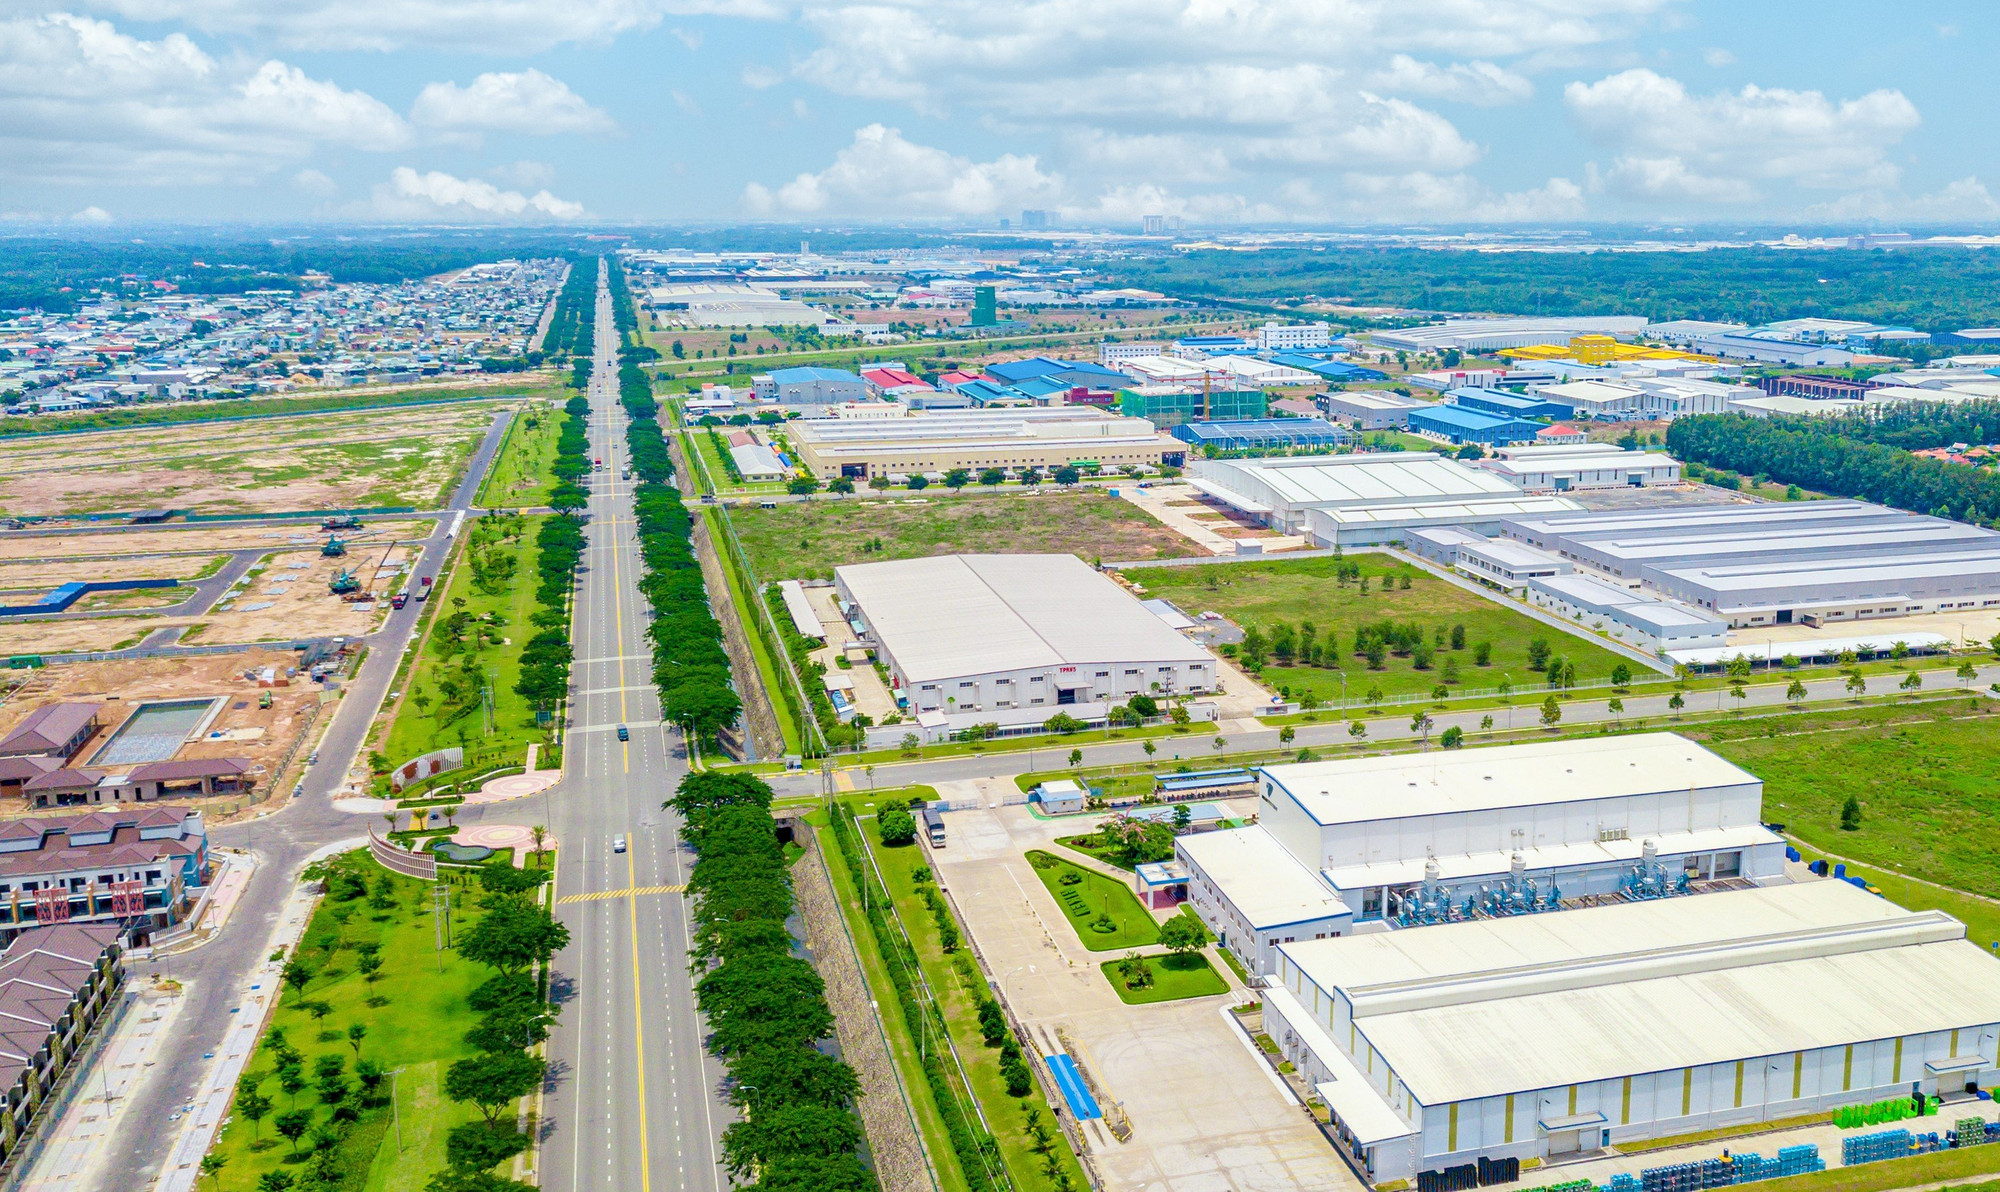 Công nghiệp tại Tân Uyên phát triển mạnh, trên địa bàn có nhiều KCN lớn.